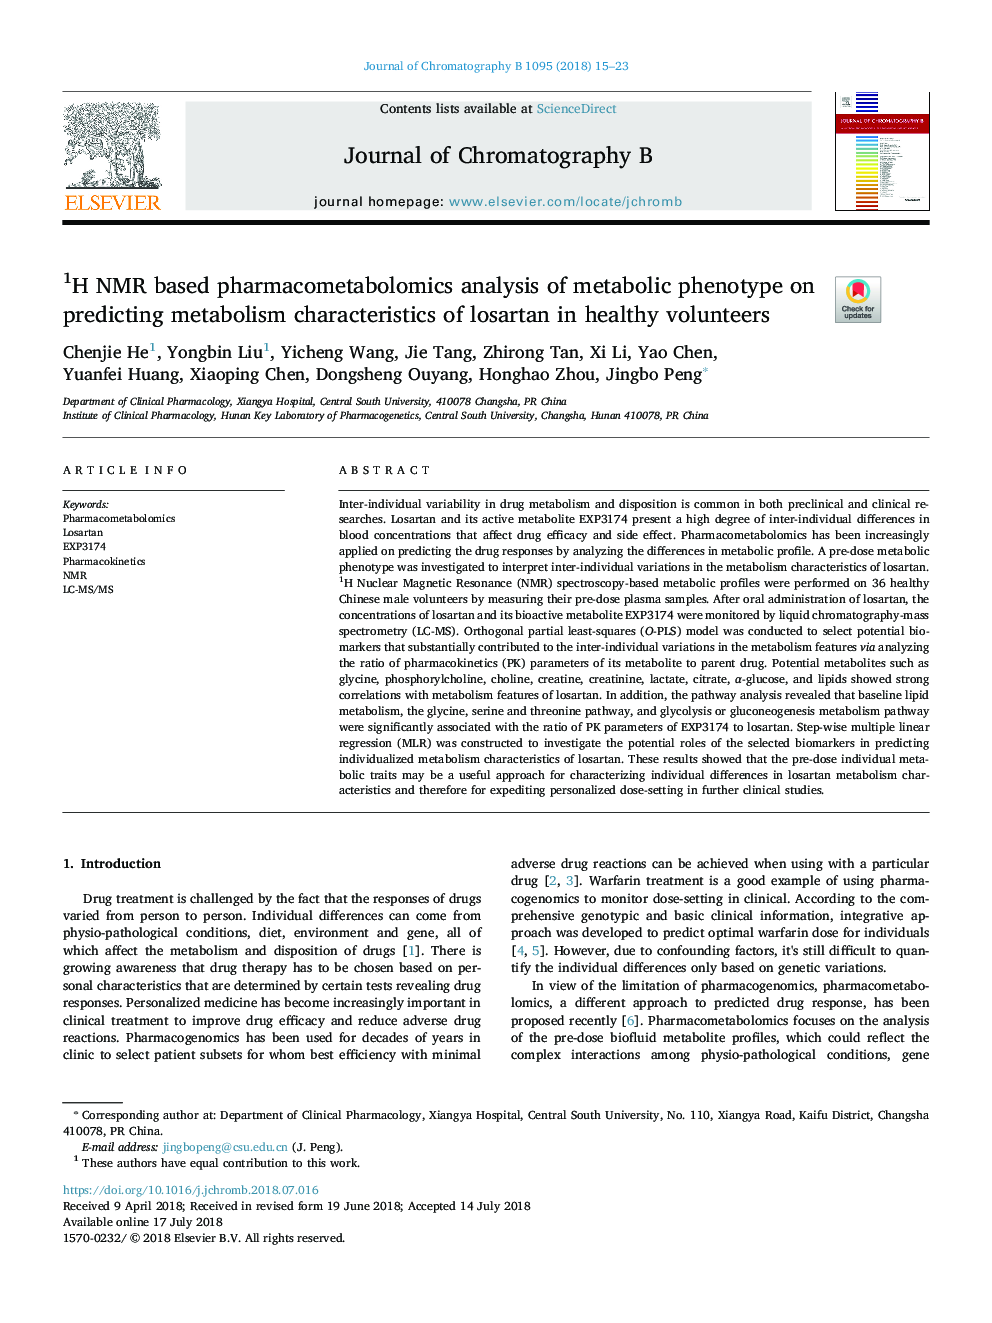 تجزیه و تحلیل فنوموتیک متابولیک بر روی پیش بینی ویژگی های متابولیسم لوزارتان در افراد سالم 